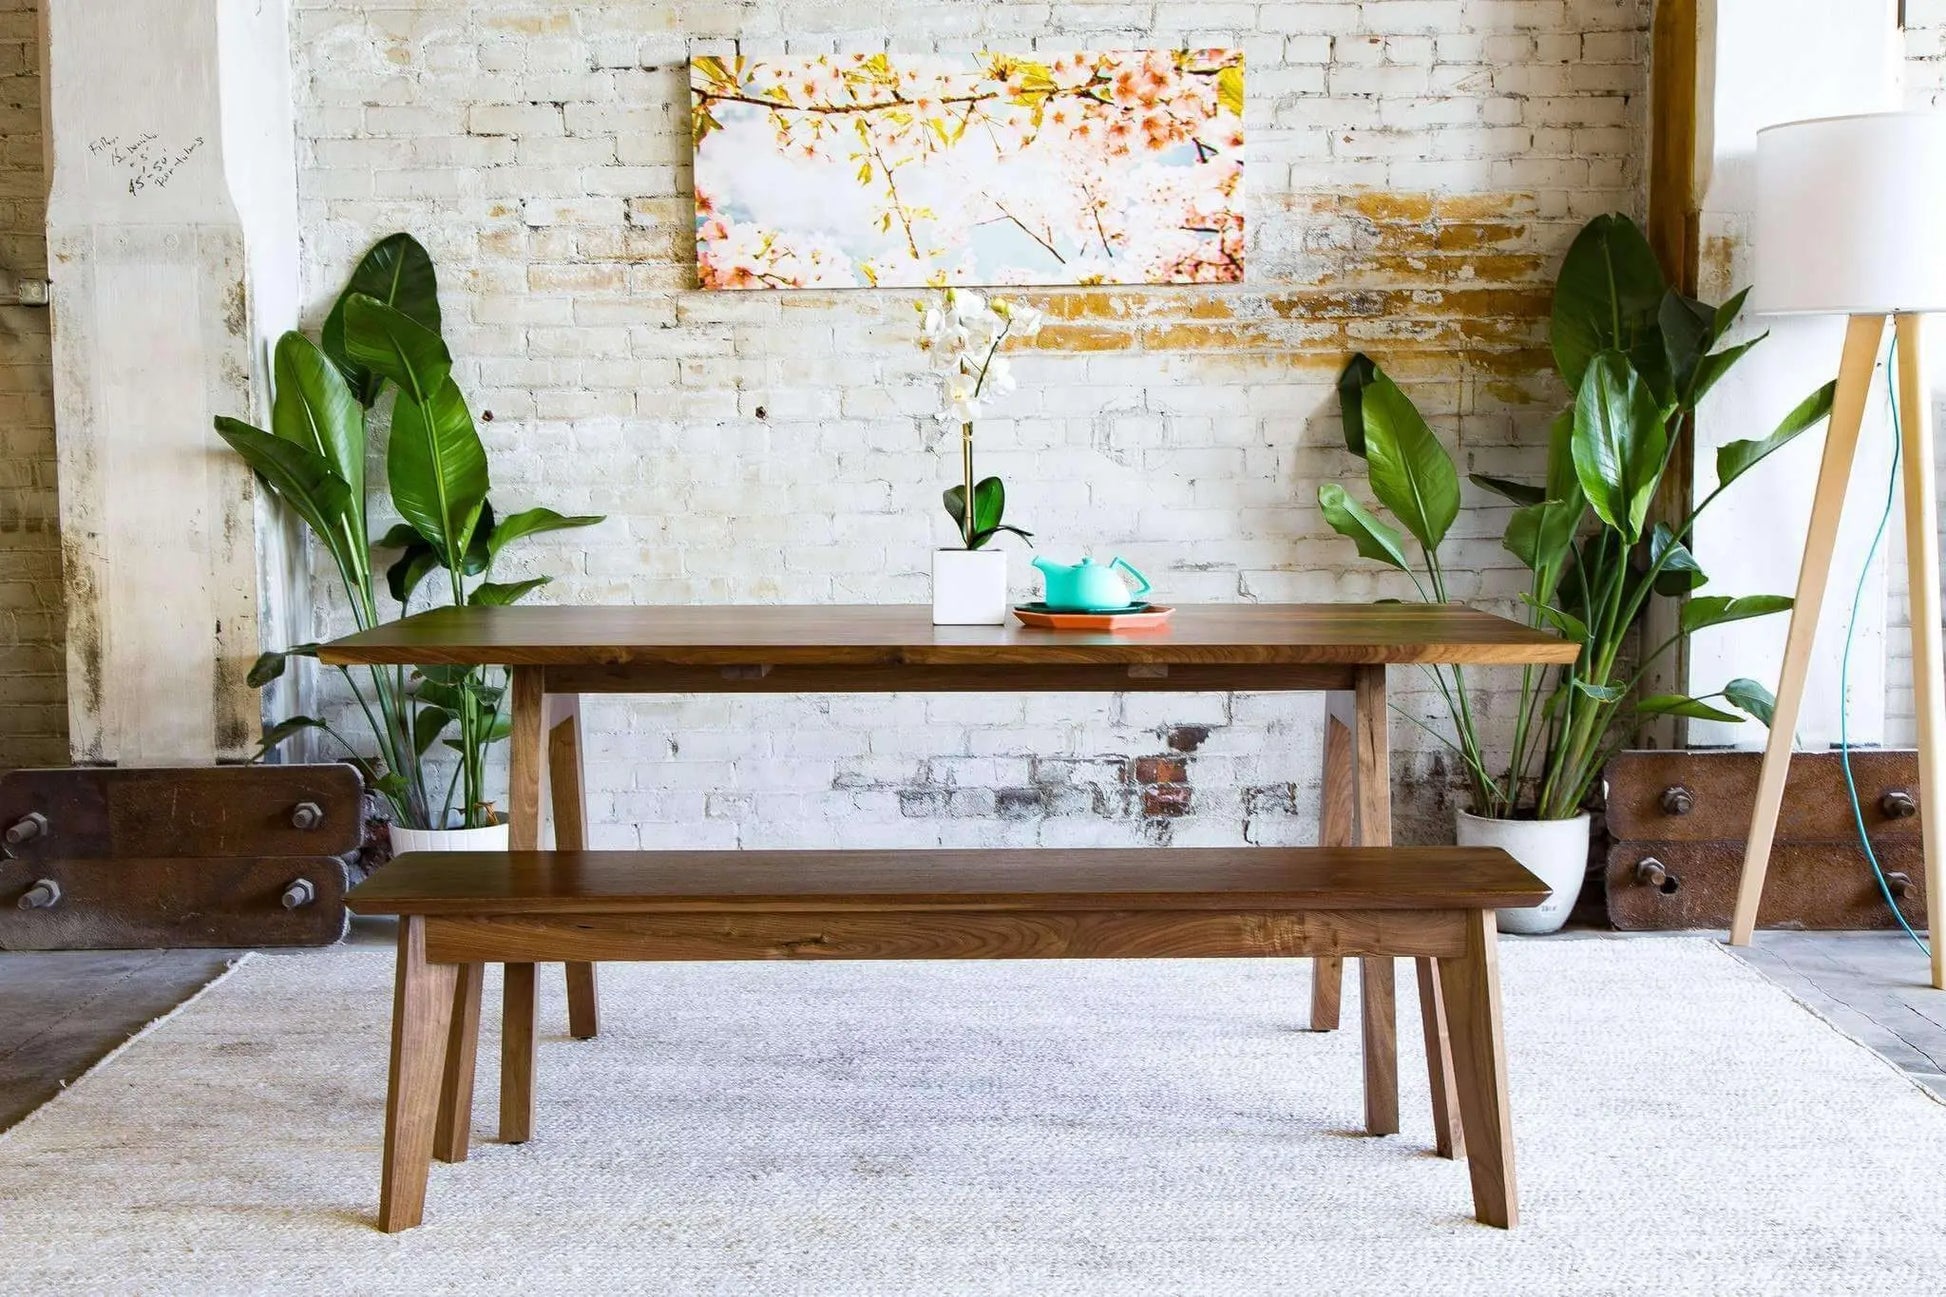 Sputnik Scandinavian Dining Table Set featuring minimalist design